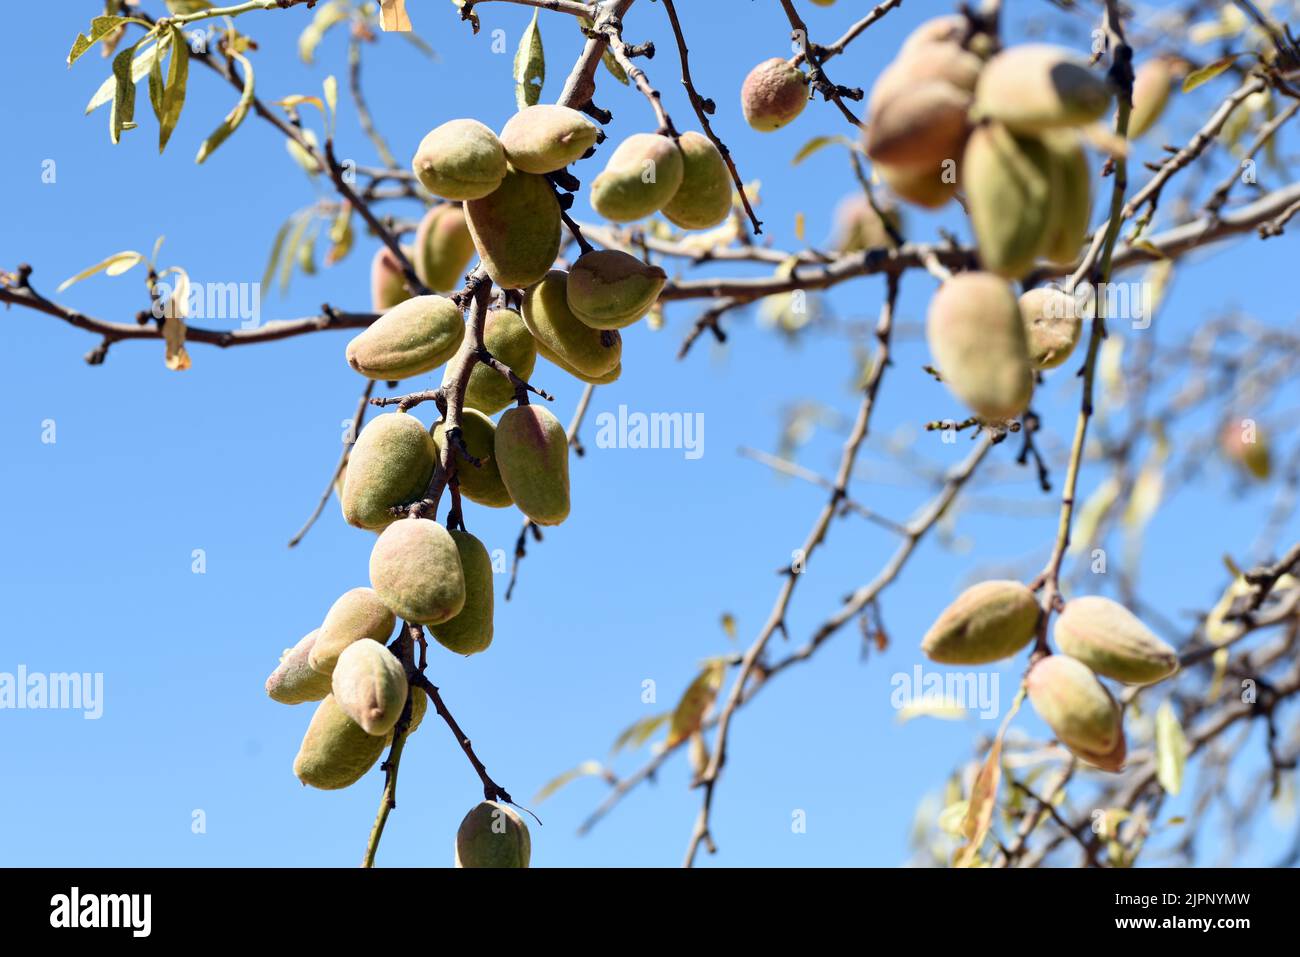 Detalle de las ramas del árbol del almendro cargadas de sus frutos a finales de agosto Foto Stock